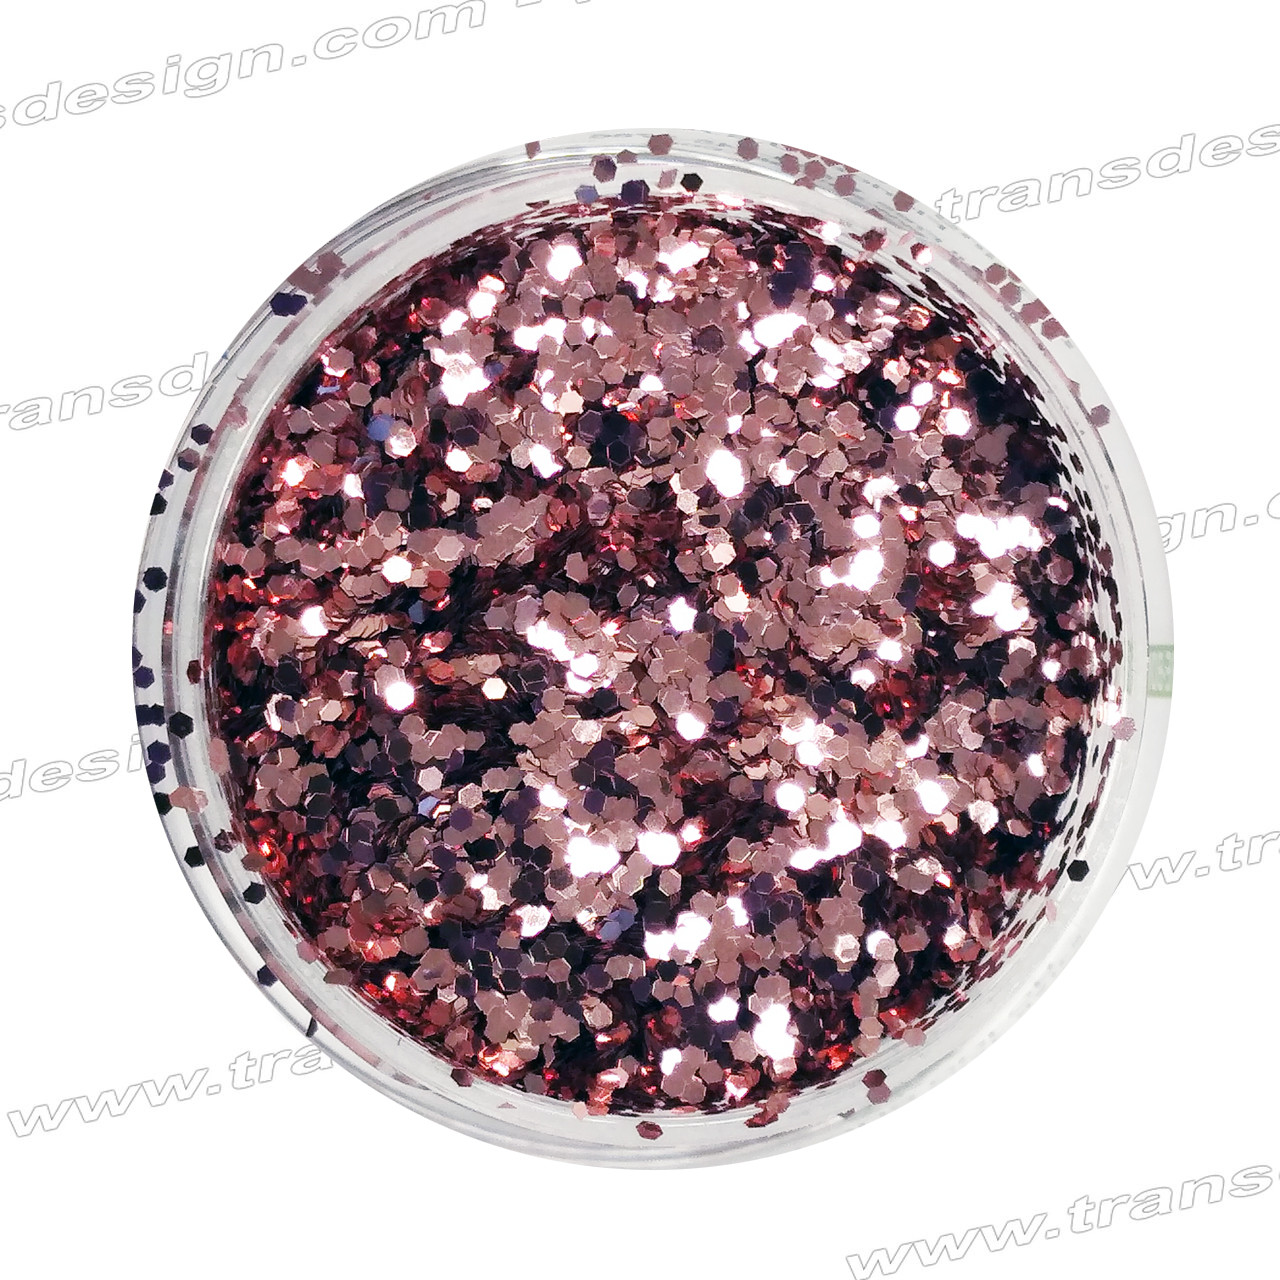 Assorted Iridescent Pink Glitter in Hexagon Shape (5 pcs)